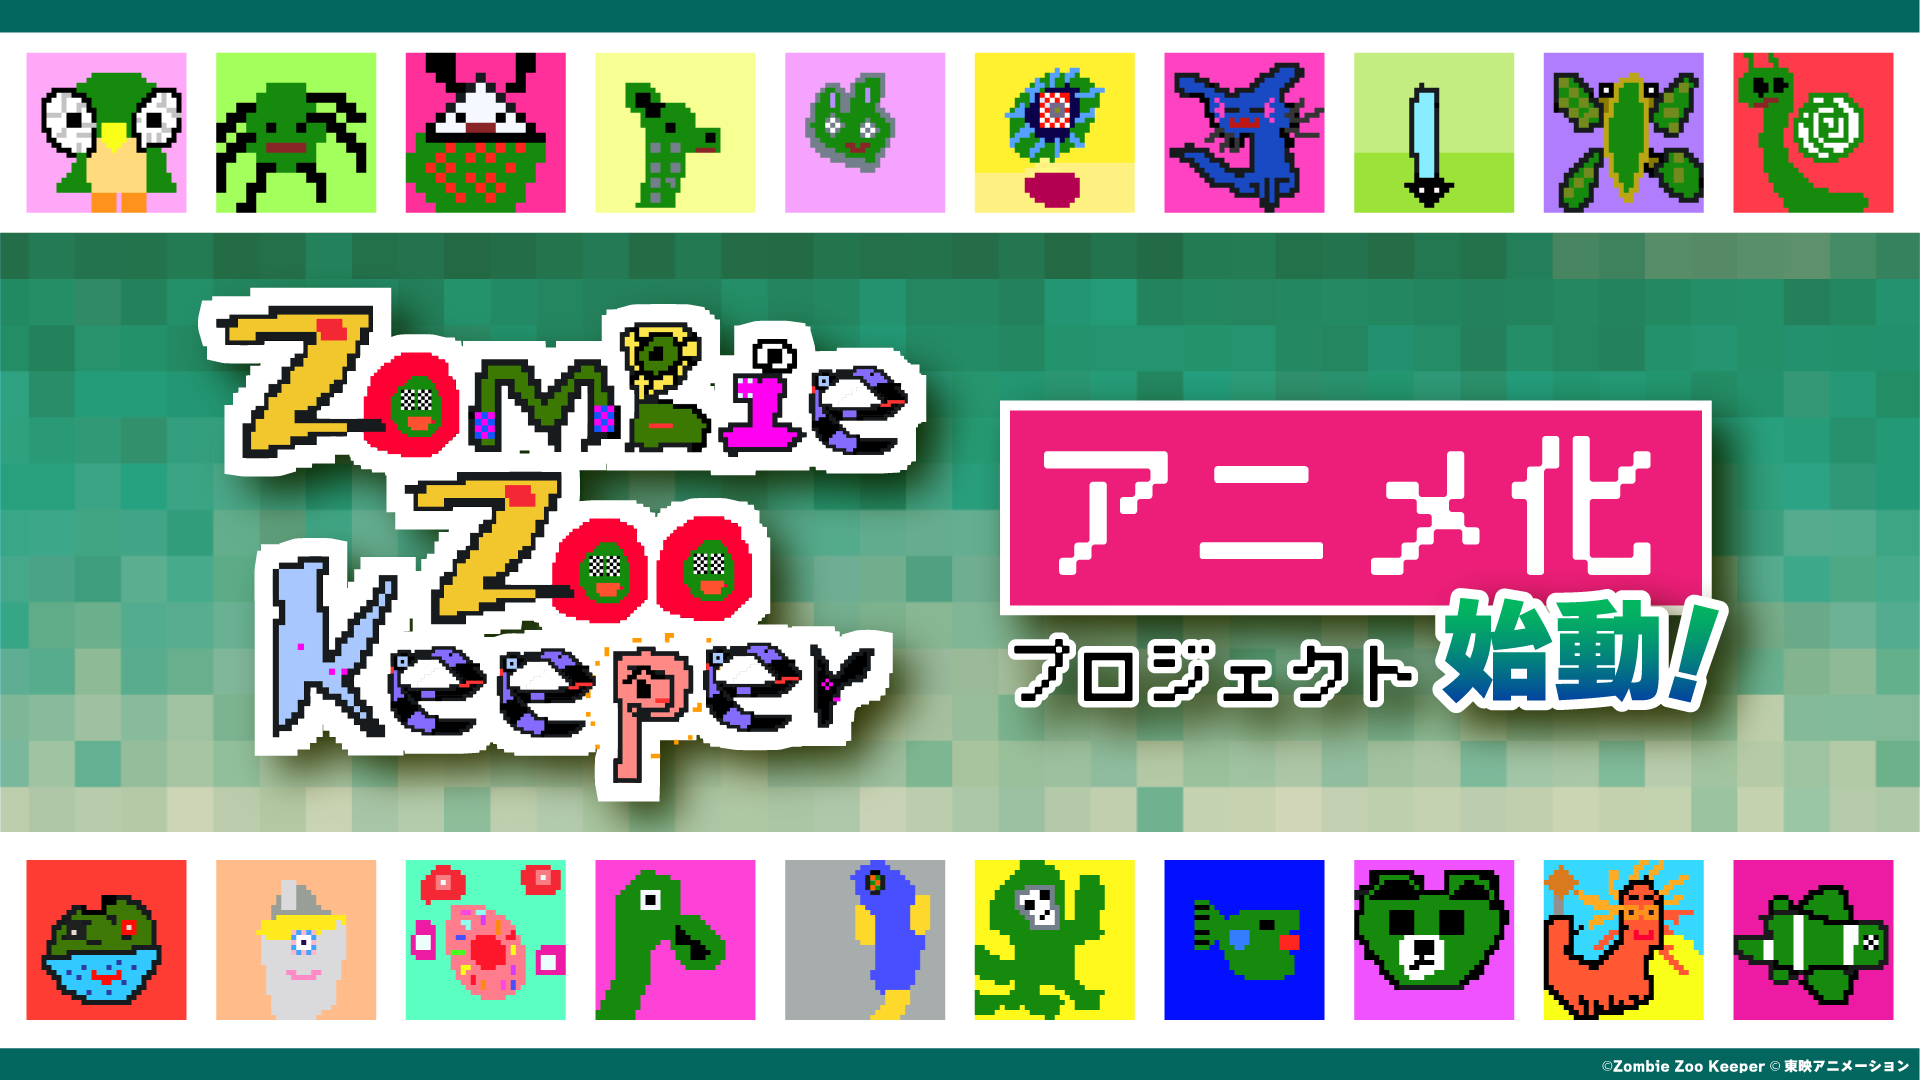 日本初！NFTアート発、アニメ化プロジェクト始動！
9歳の少年による「Zombie Zoo」×東映アニメーション